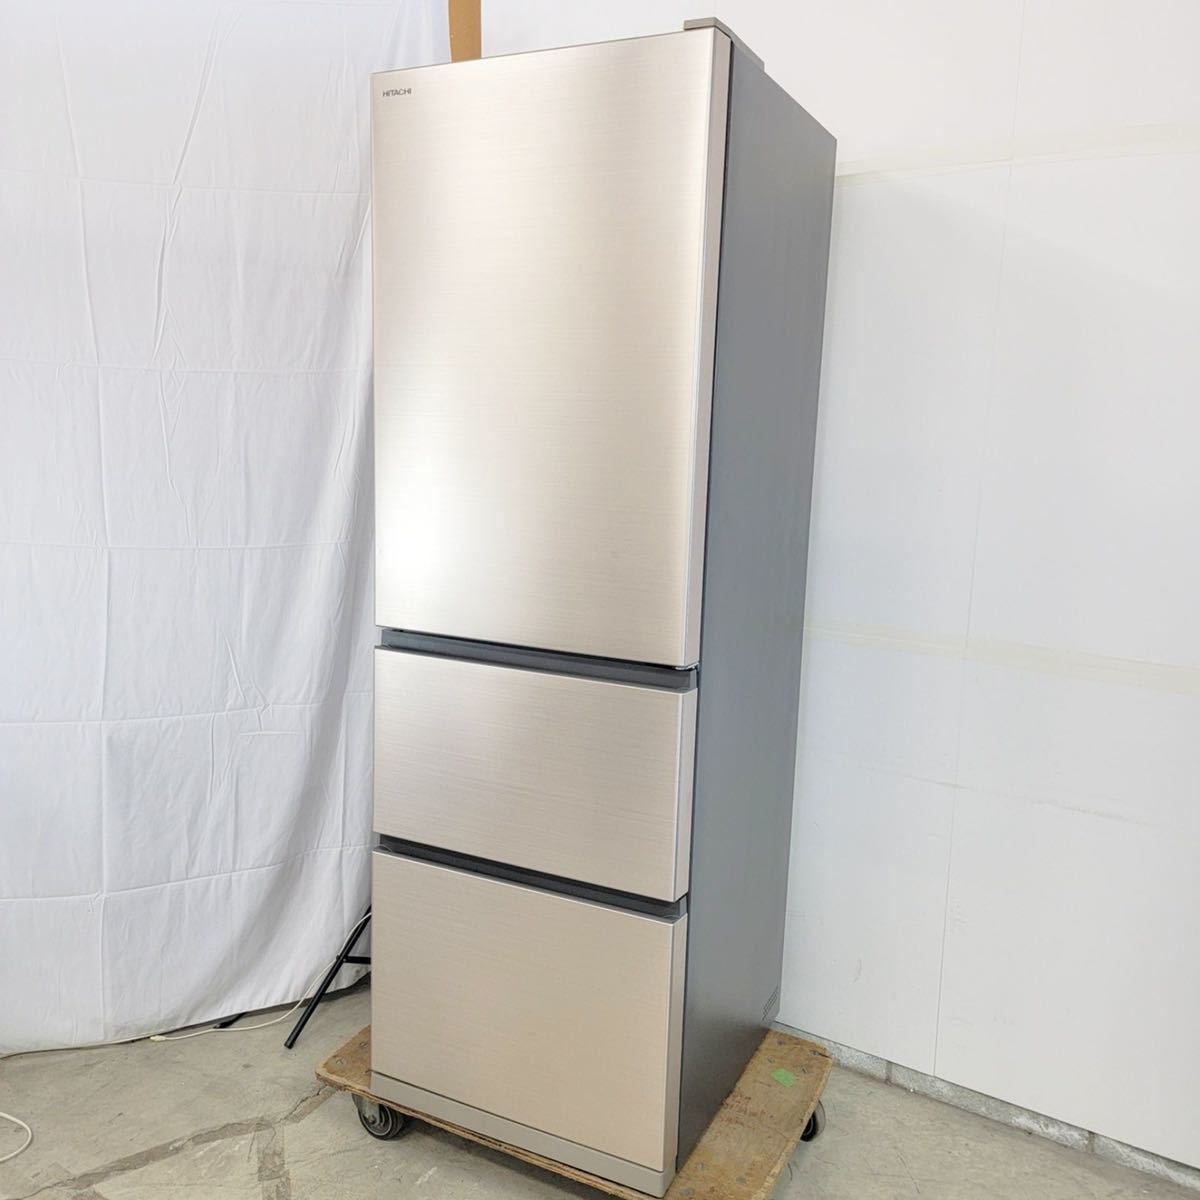 最新のデザイン HITACHI 日立 ノンフロン冷凍冷蔵庫 2007年製 82か4 F 